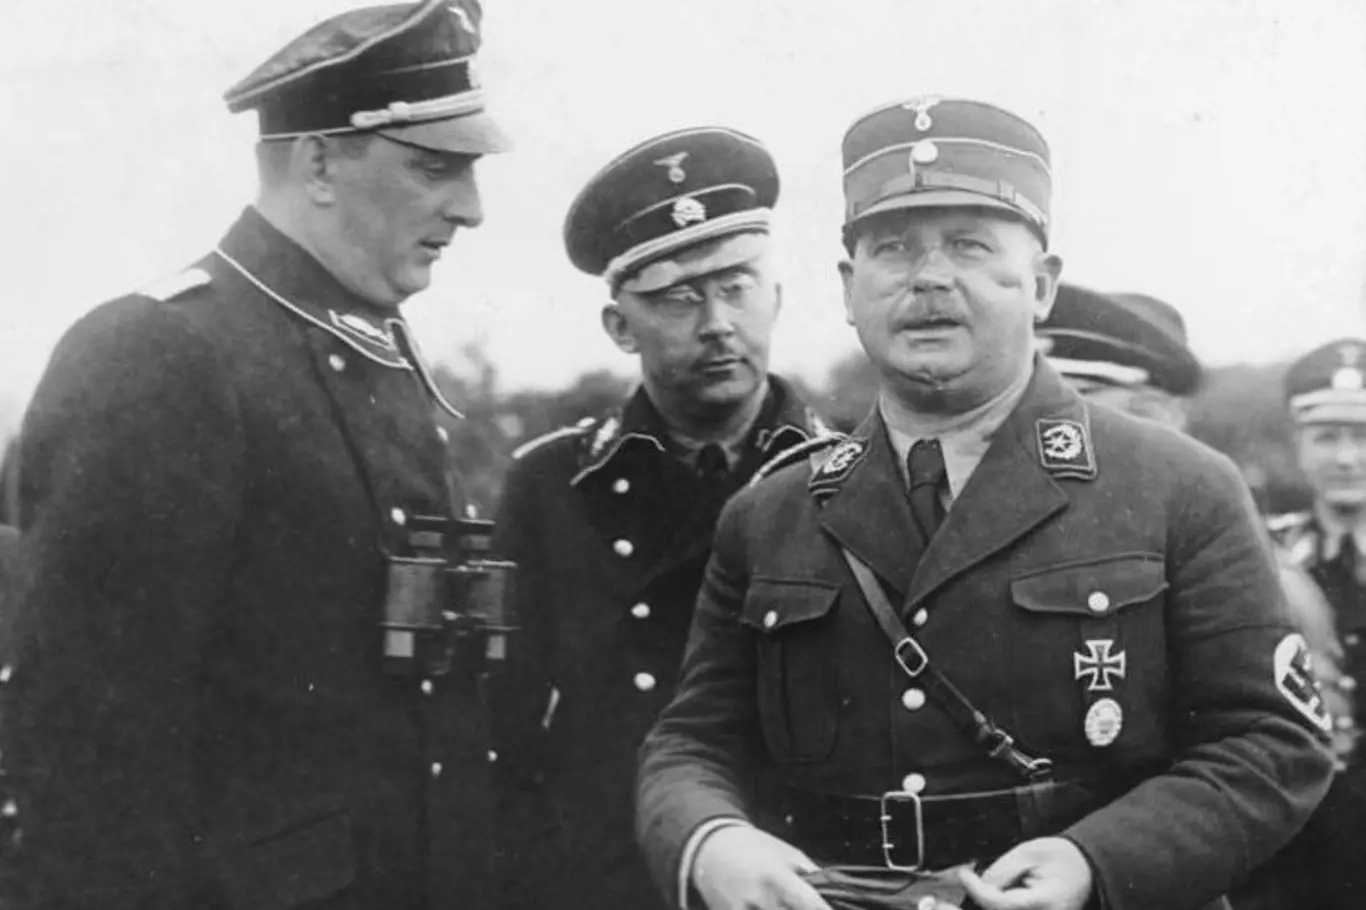 Tehdy si ještě rozuměli - SS-Oberstgruppenführer Kurt Daluege, říšský vůdce SS Heinrich Himmler a náčelník štábu SA Ernst Röhm. Později se SS a SA obrátí proti sobě